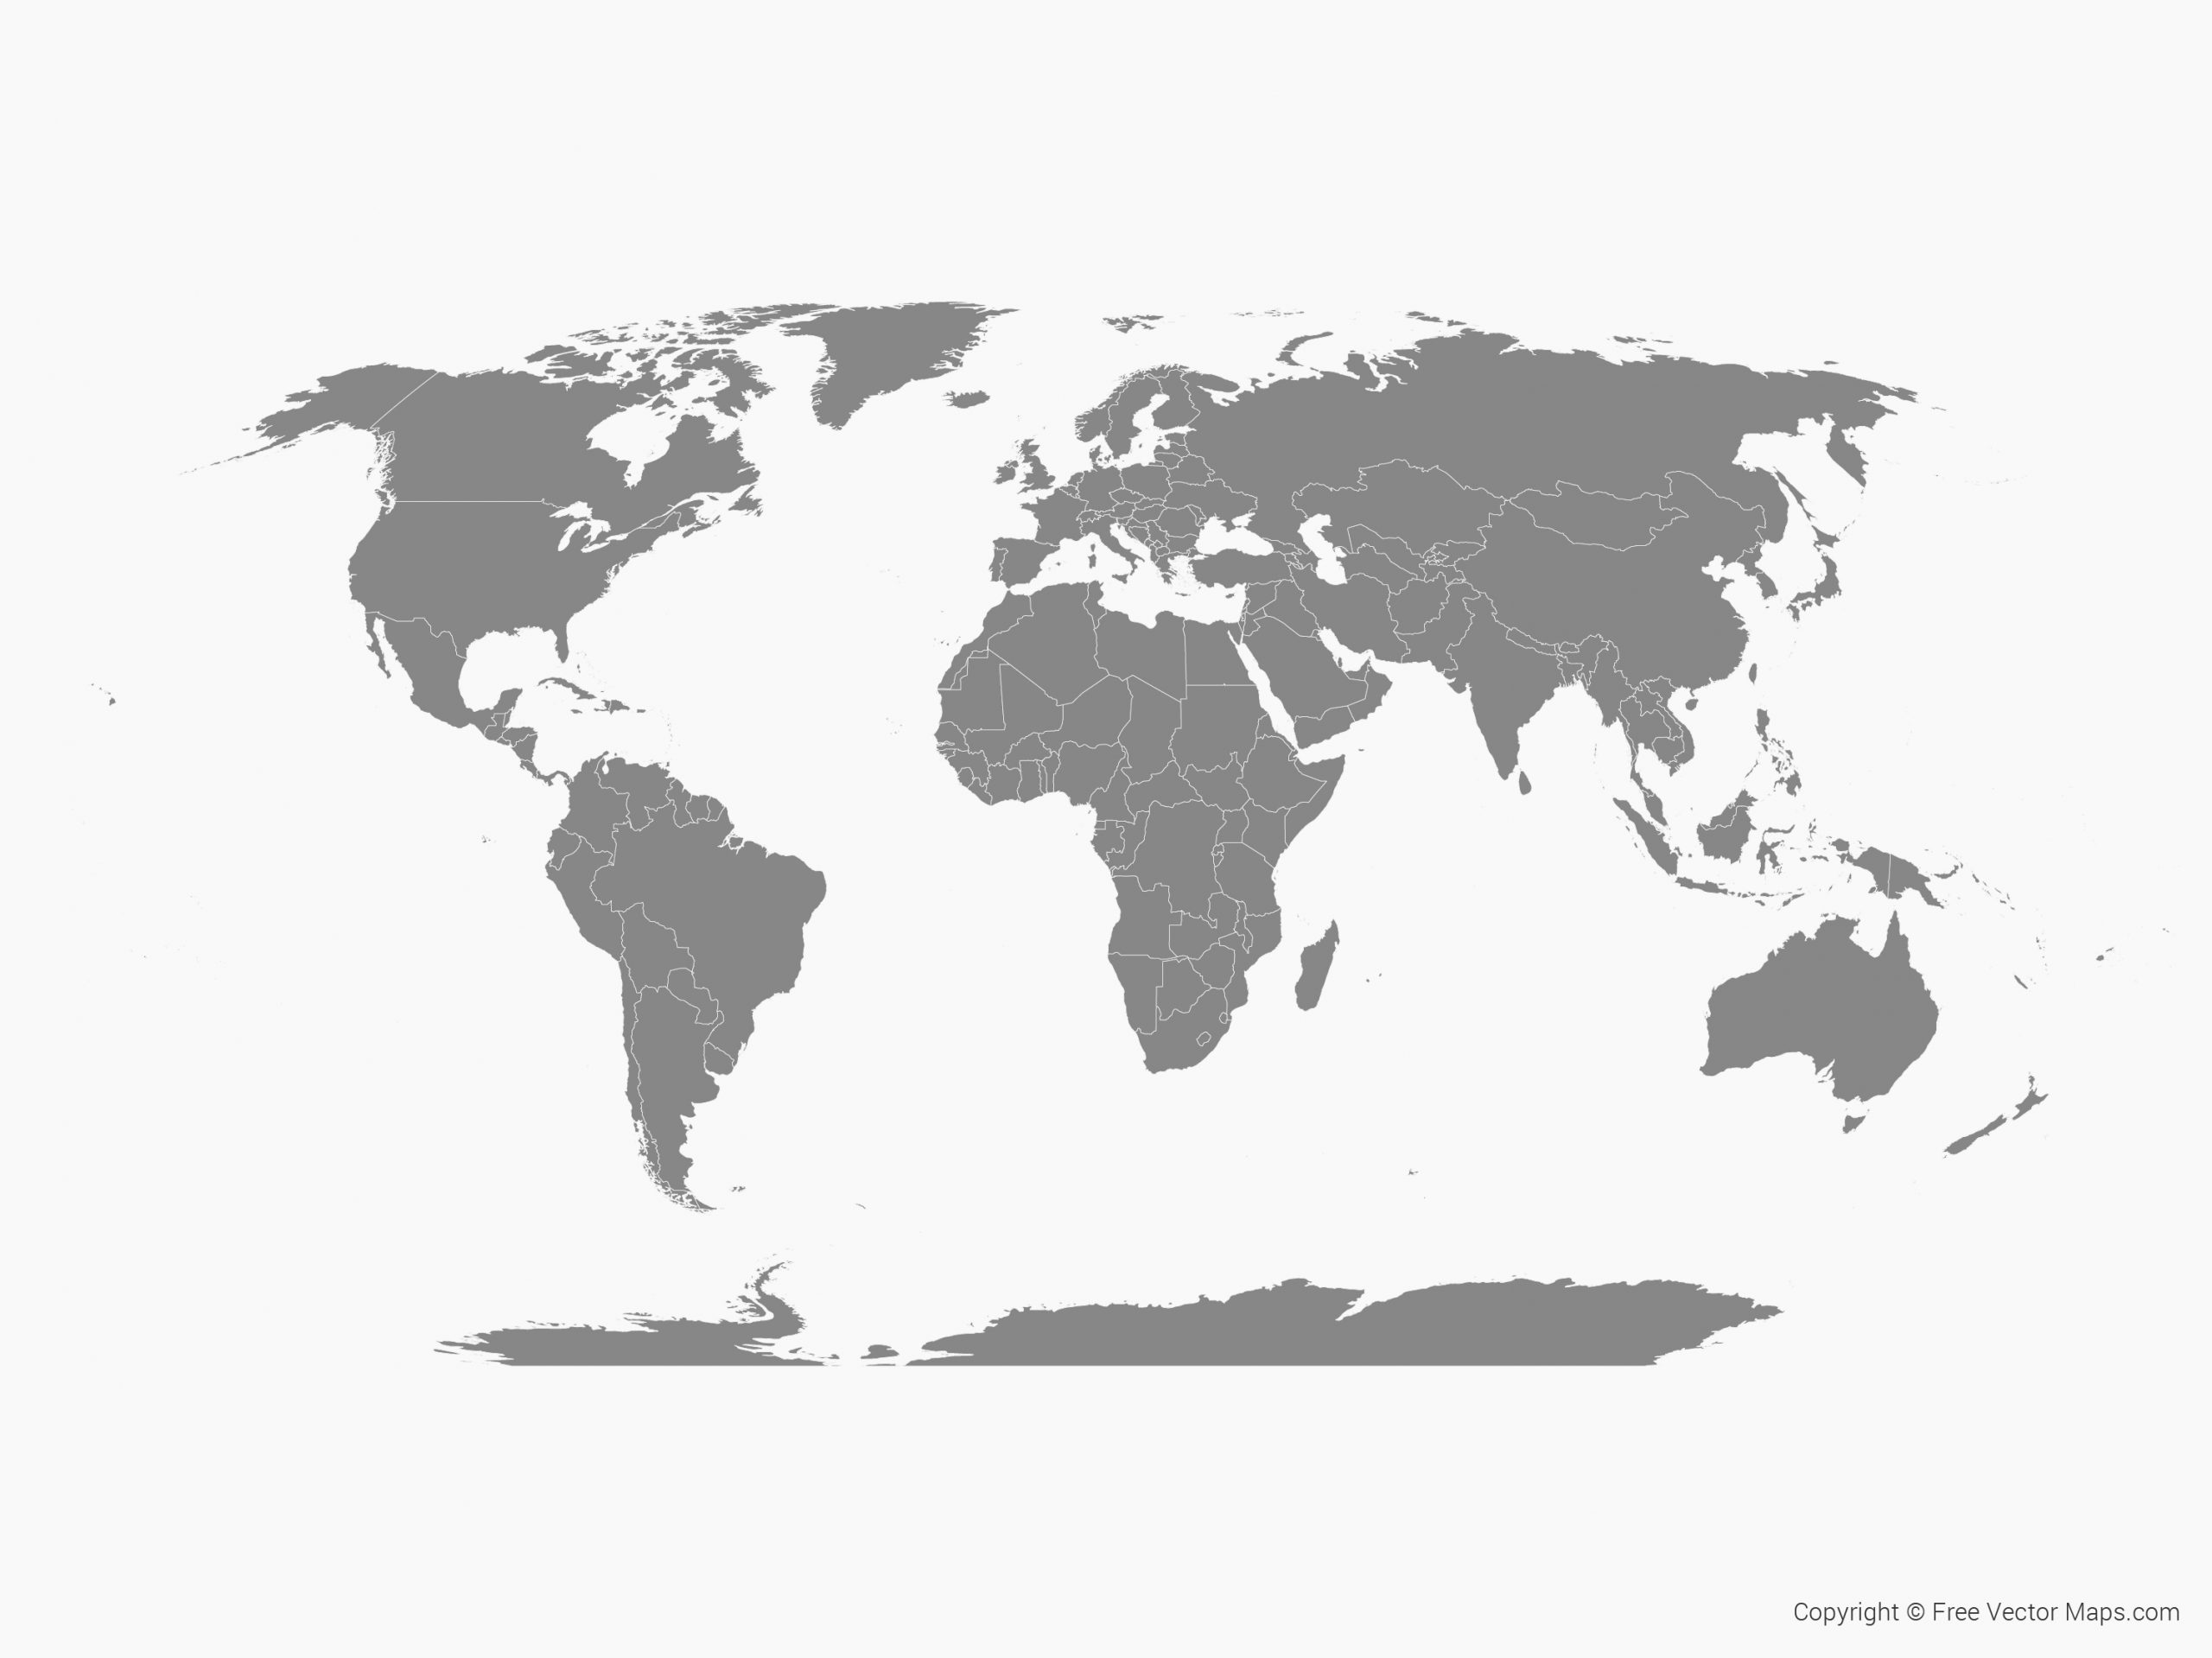 Groß Weltkarte Zum Download Kostenlos ganzes Weltkarte Zum Ausdrucken